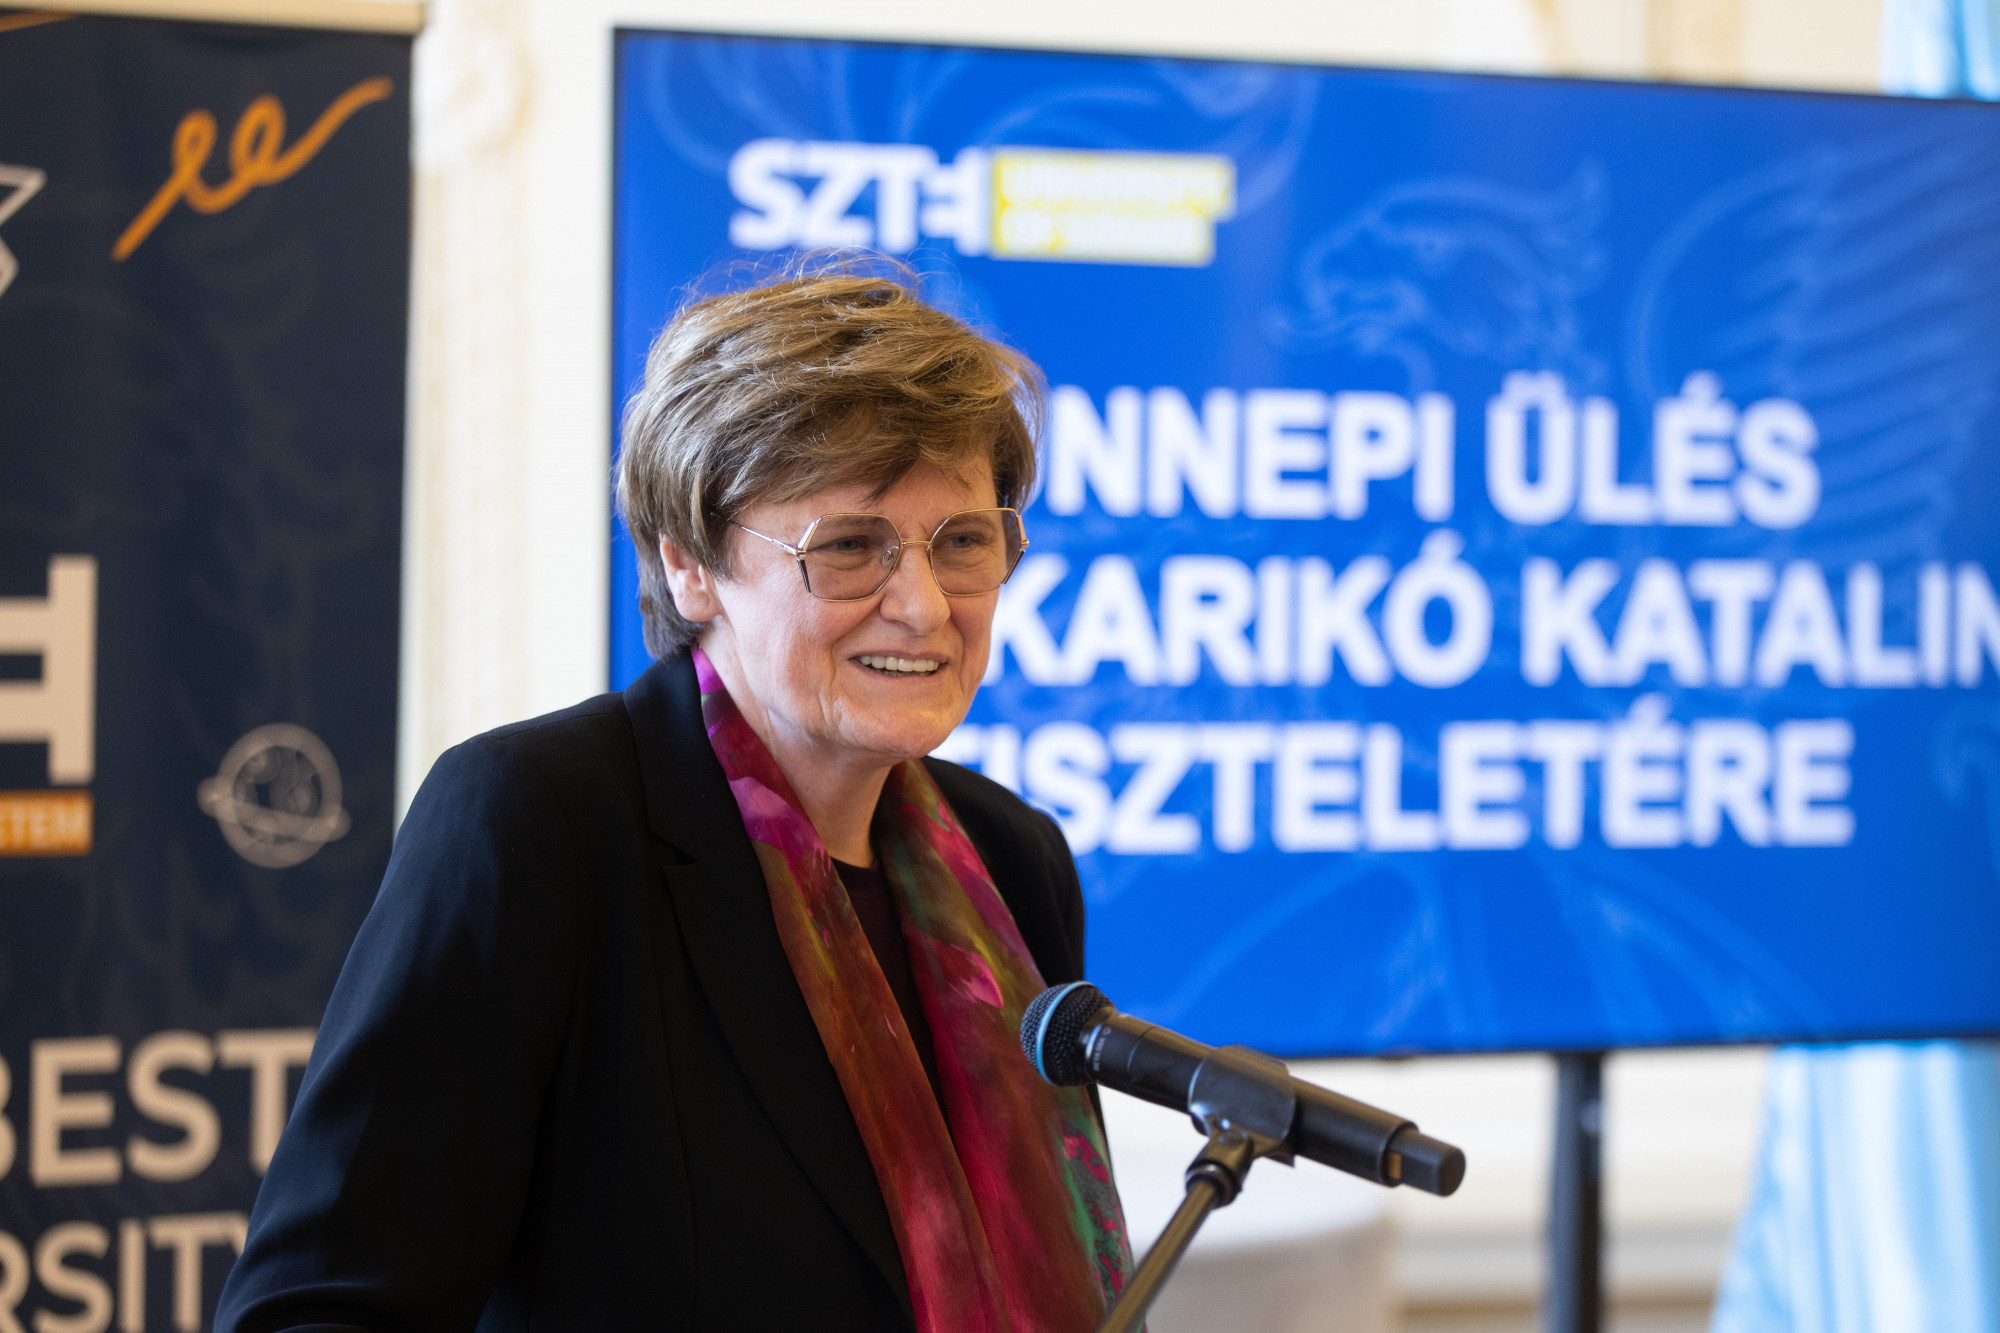 Karikó Katalin: Nincs jachtom, és nem is lesz, oktatásra és kutatásra szánom a Nobellel járó összeget